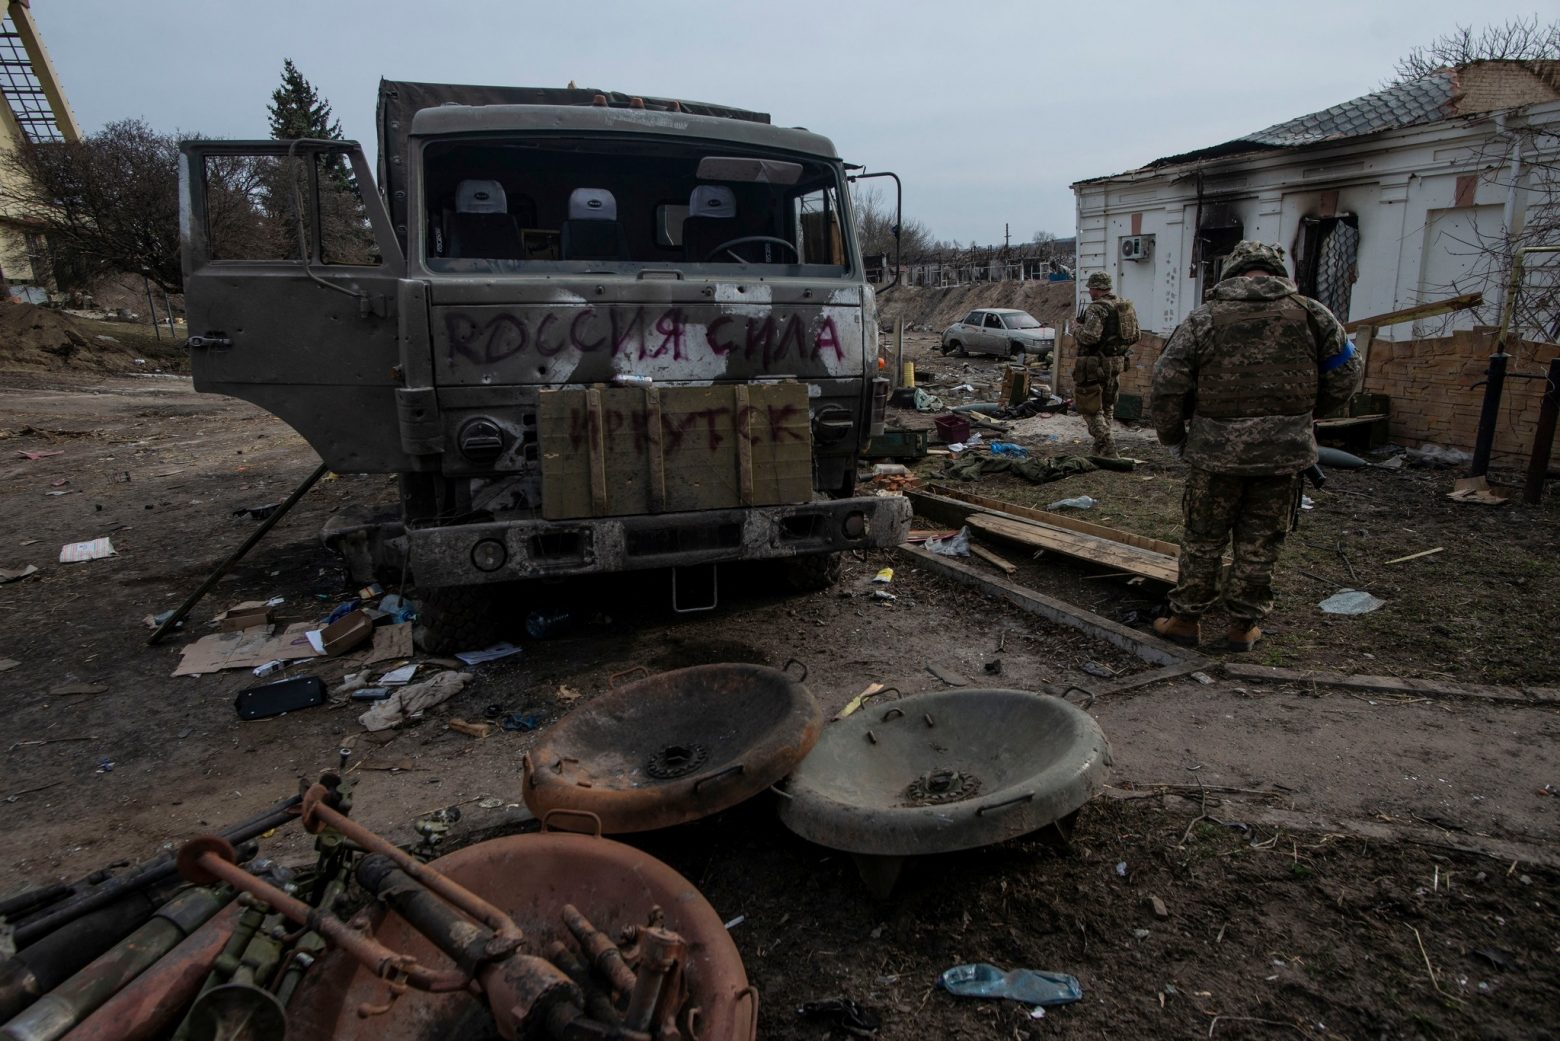 Τεράστια οικονομική καταστροφή στην Ουκρανία: Πάνω από 560 δισ. δολάρια ξεπερνούν οι οικονομικές απώλειες